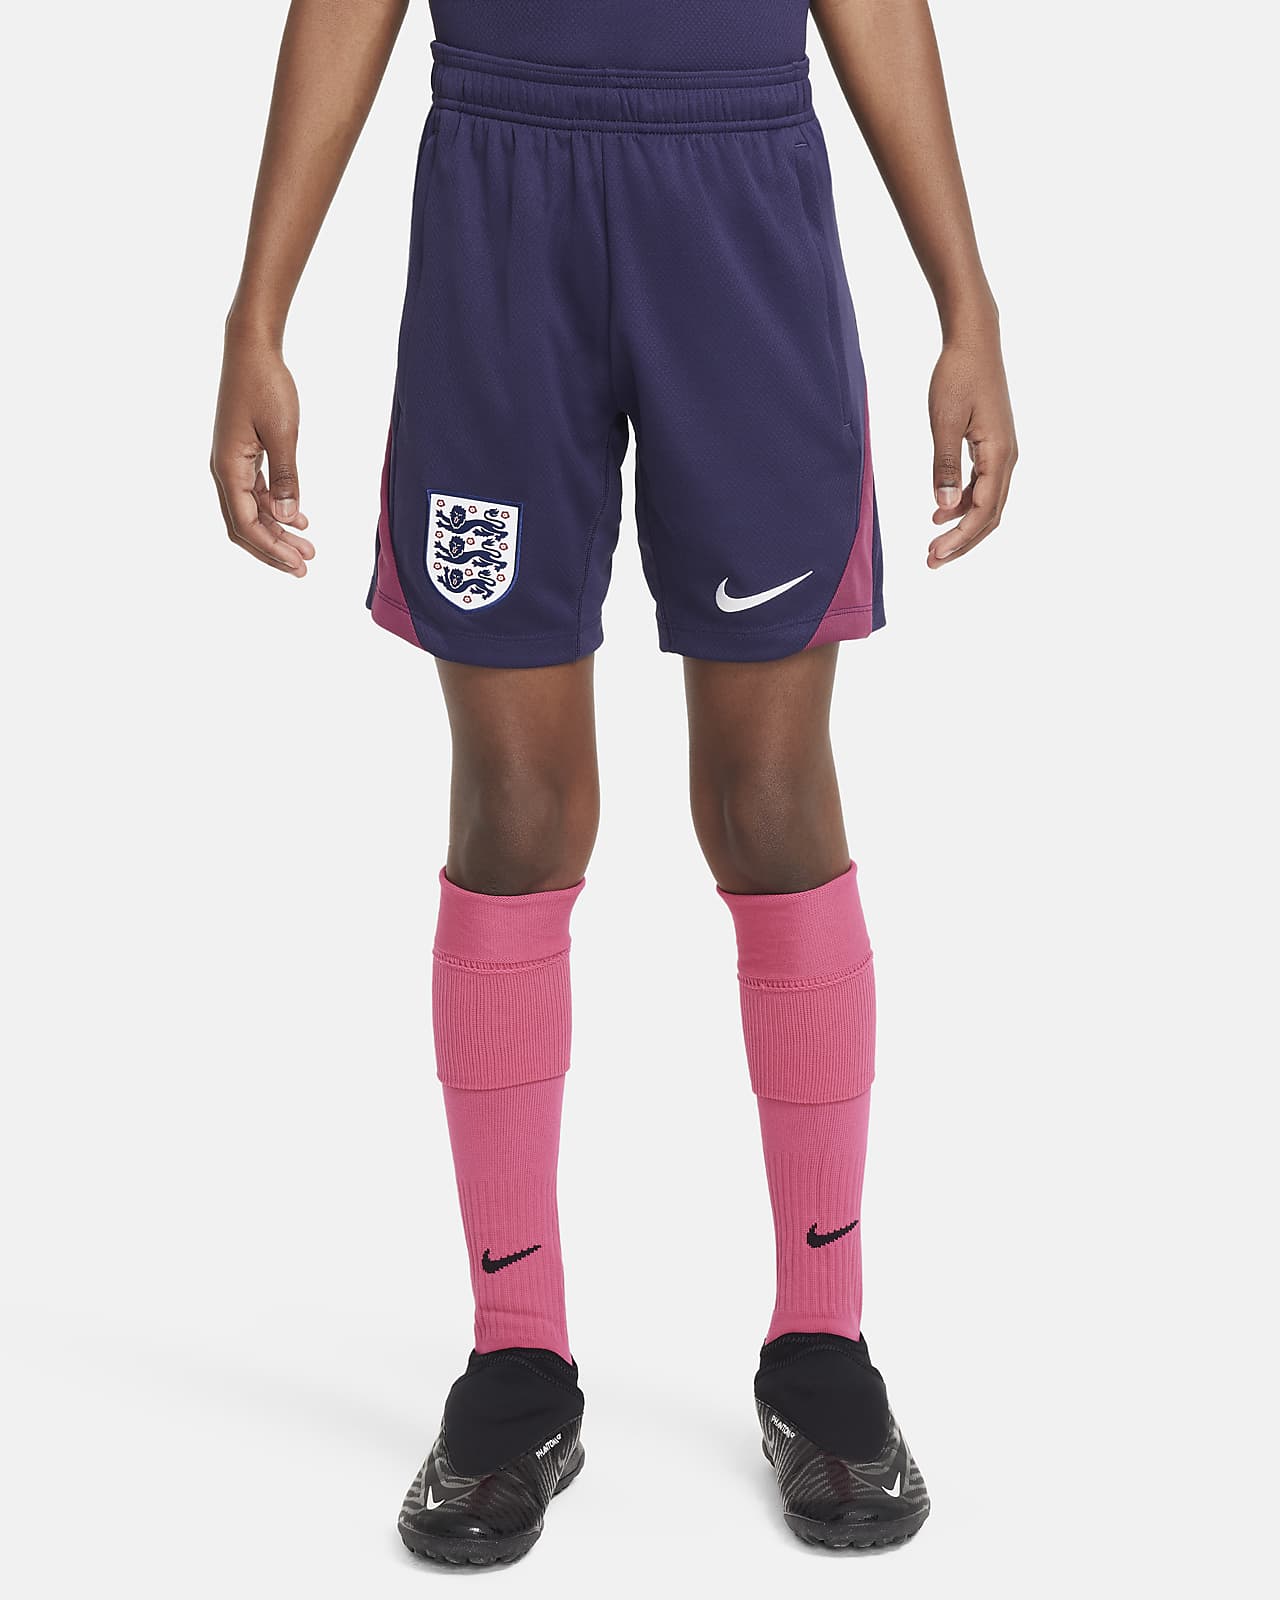 Anglaterra Strike Pantalons curts de futbol de teixit Knit Nike Dri-FIT - Nen/a